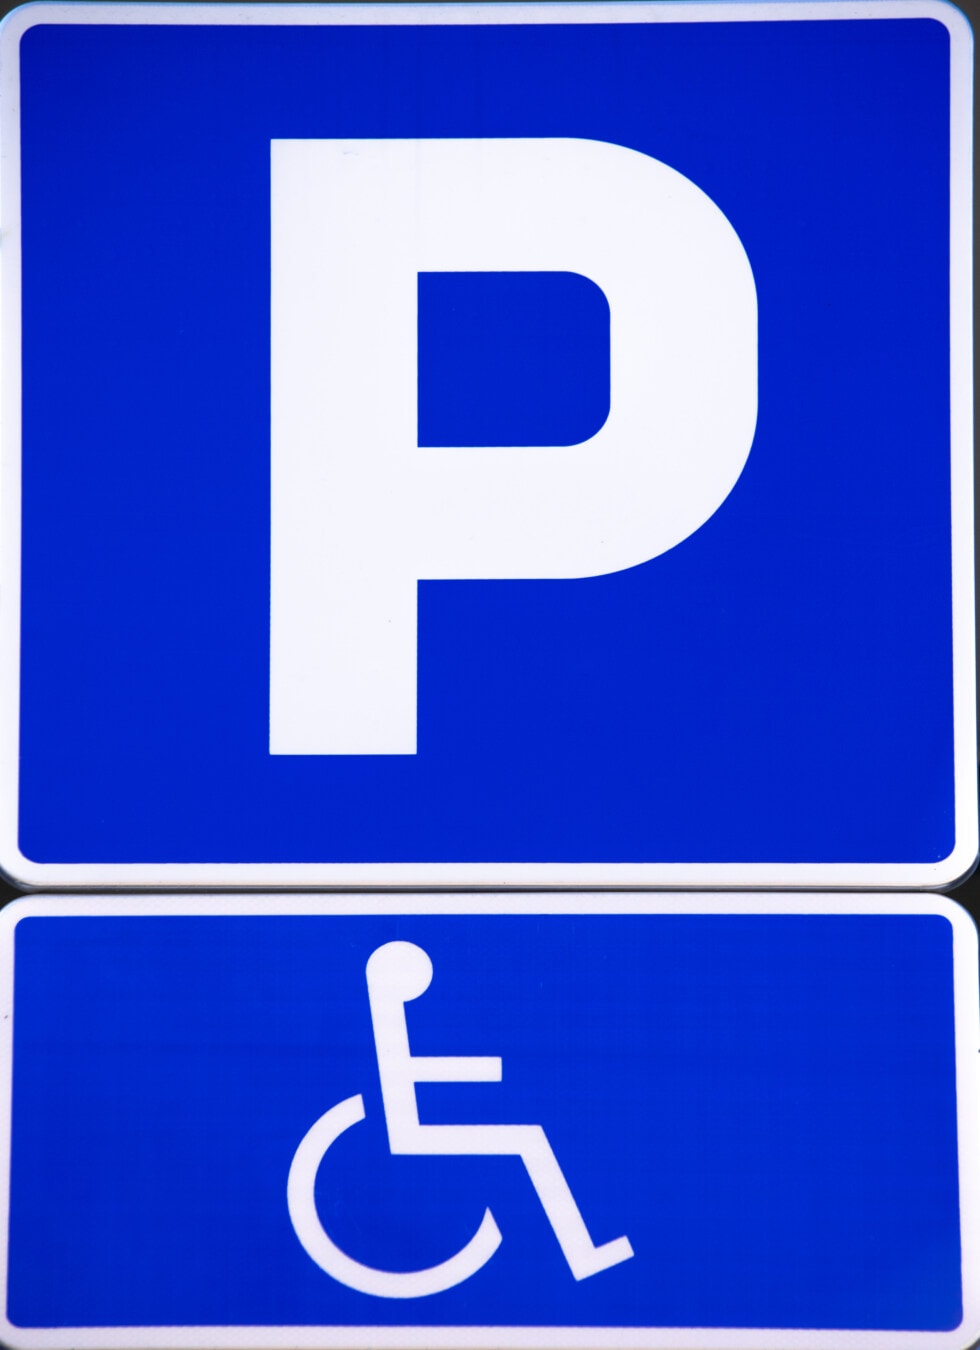 禁用, 停车, 轮椅, 停车场, 标志, 信息, 警告, 交通管制, 图标, 符号